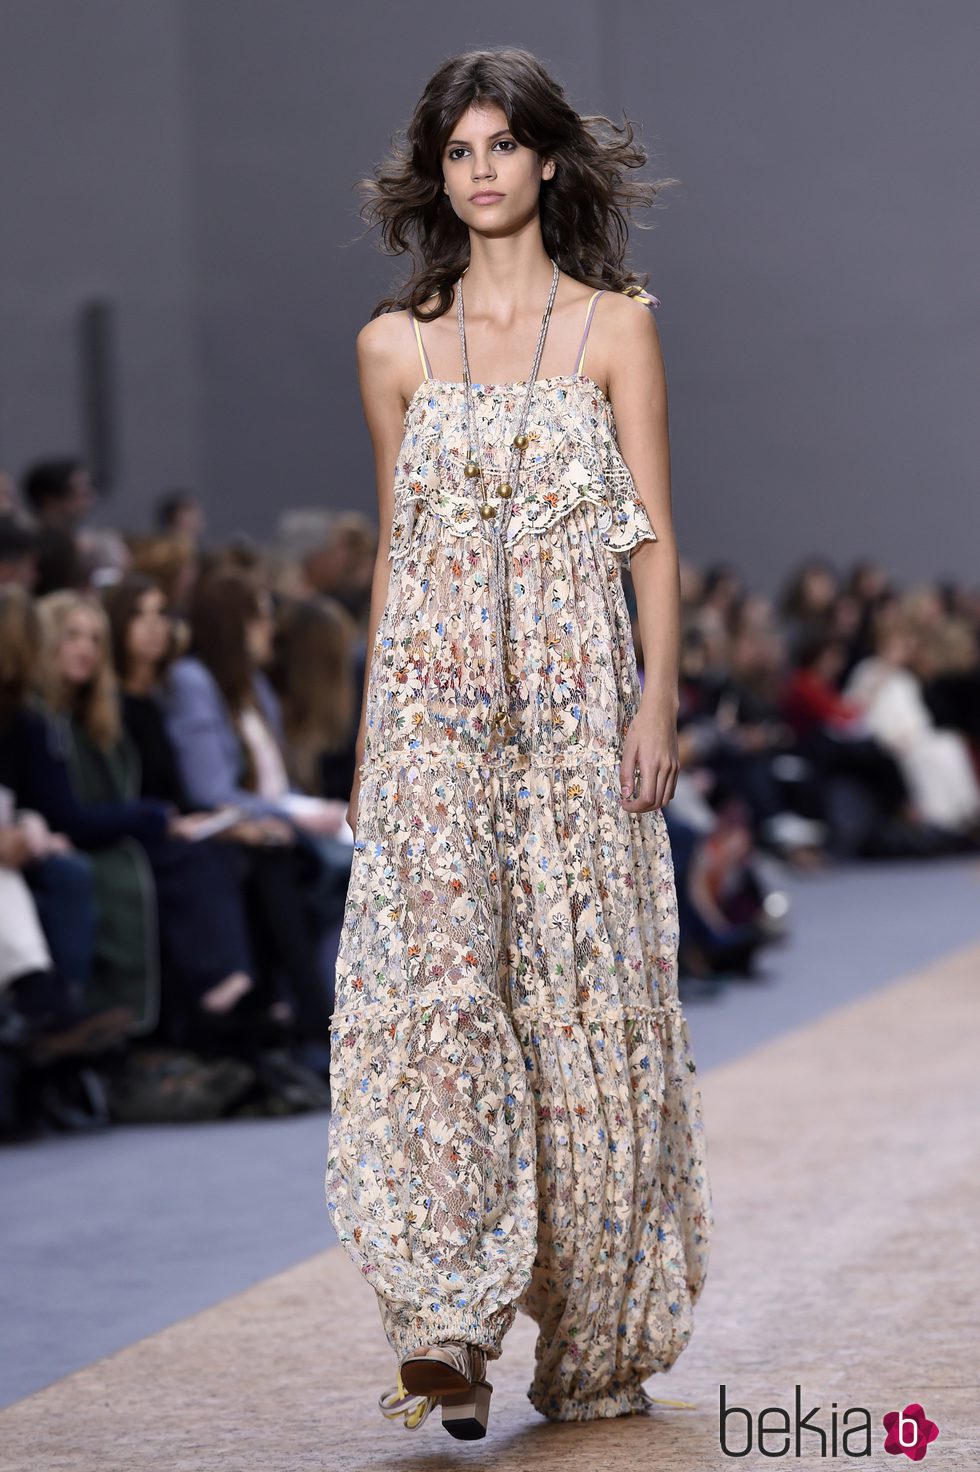 Jumpsuit de estampado floral de la colección primavera/verano 2016 de Chloé en Paris Fashion Week